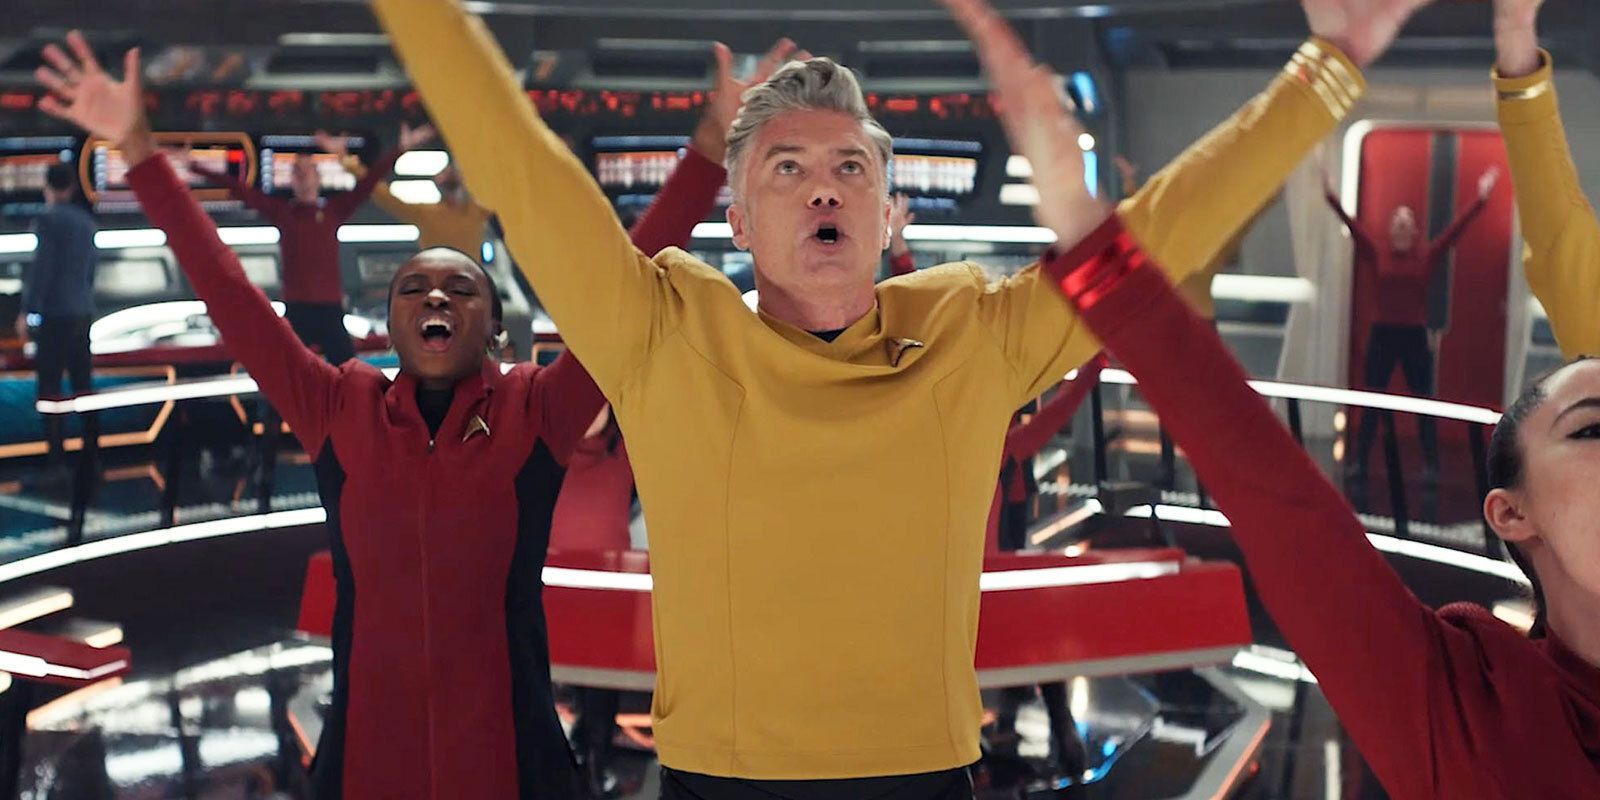 Star Trek: Strange New Worlds Pike and Uhura sing on the bridge